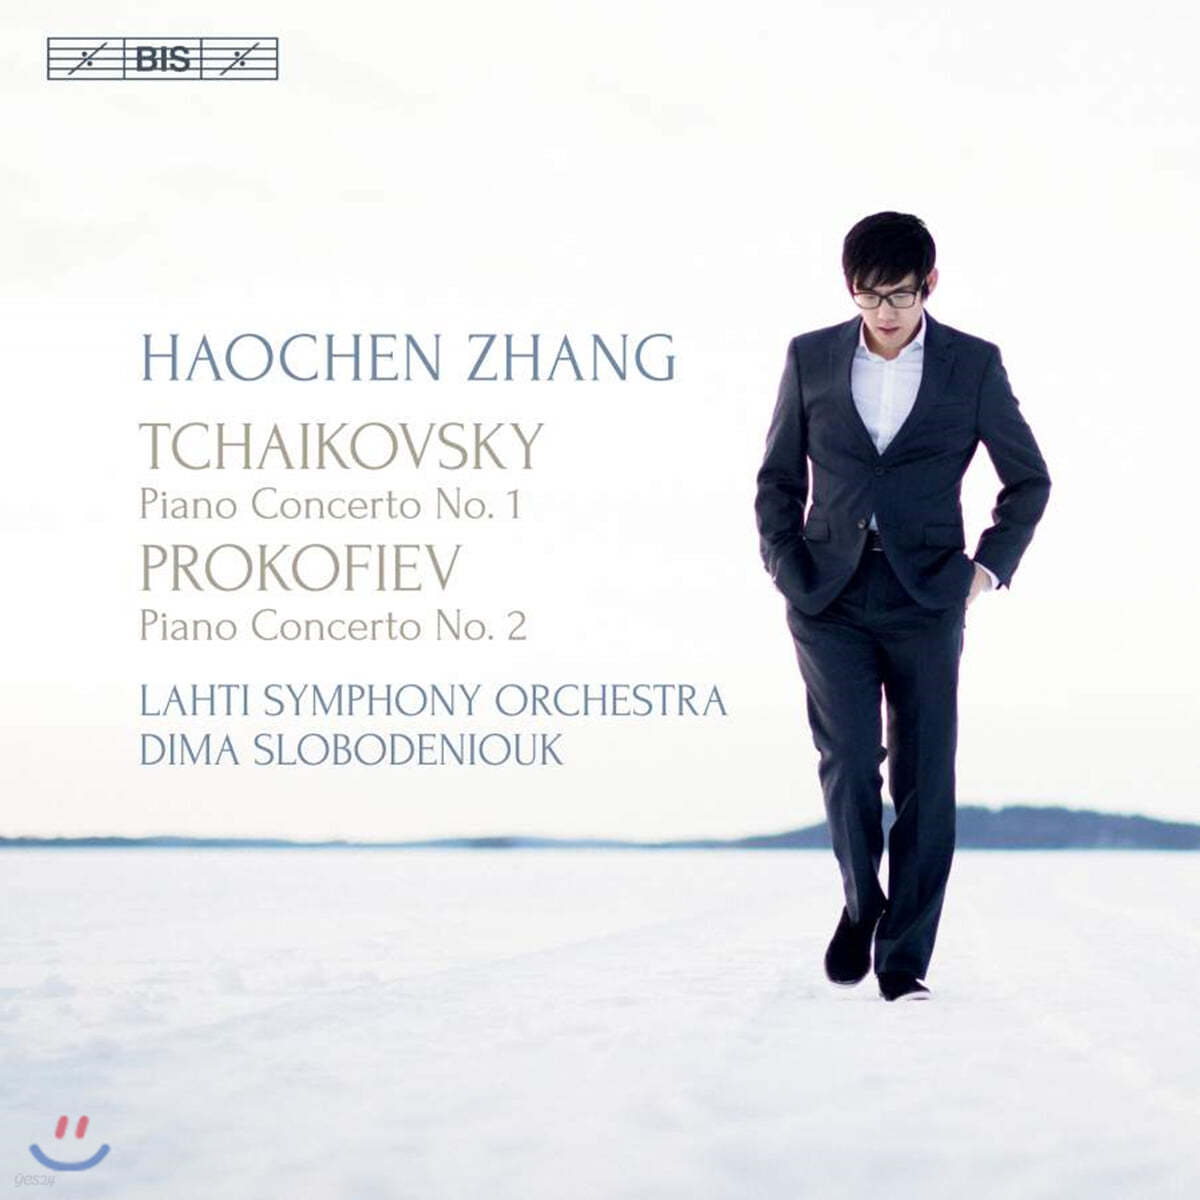 Haochen Zhang 차이코프스키 / 프로코피에프: 피아노 협주곡 - 하오첸 창 